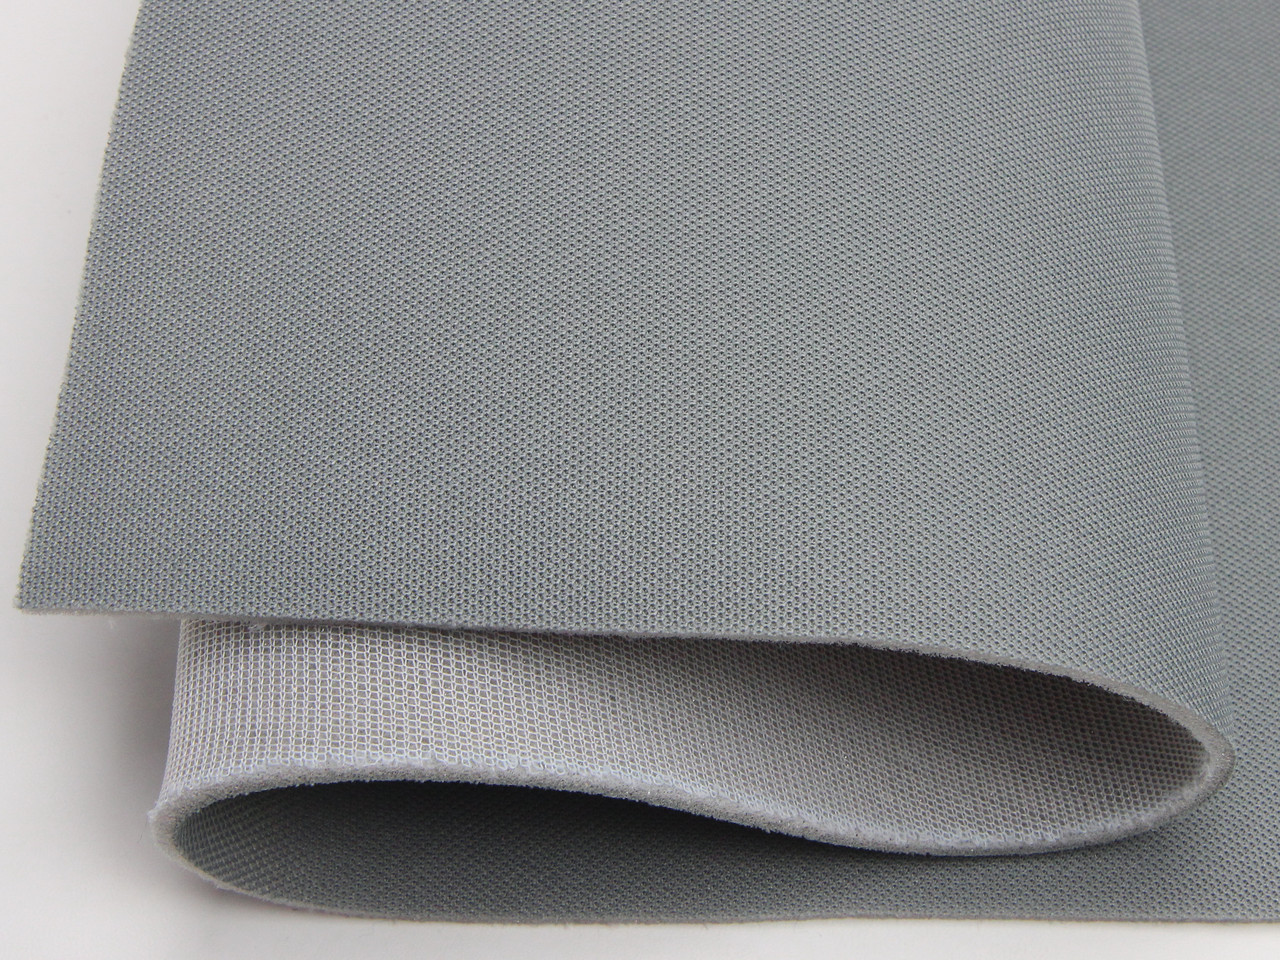 Ткань для потолка автомобиля, серая (текстура) RASEL 37, на поролоне 4мм с сеткой, ширина 1.70м (Турция) детальная фотка